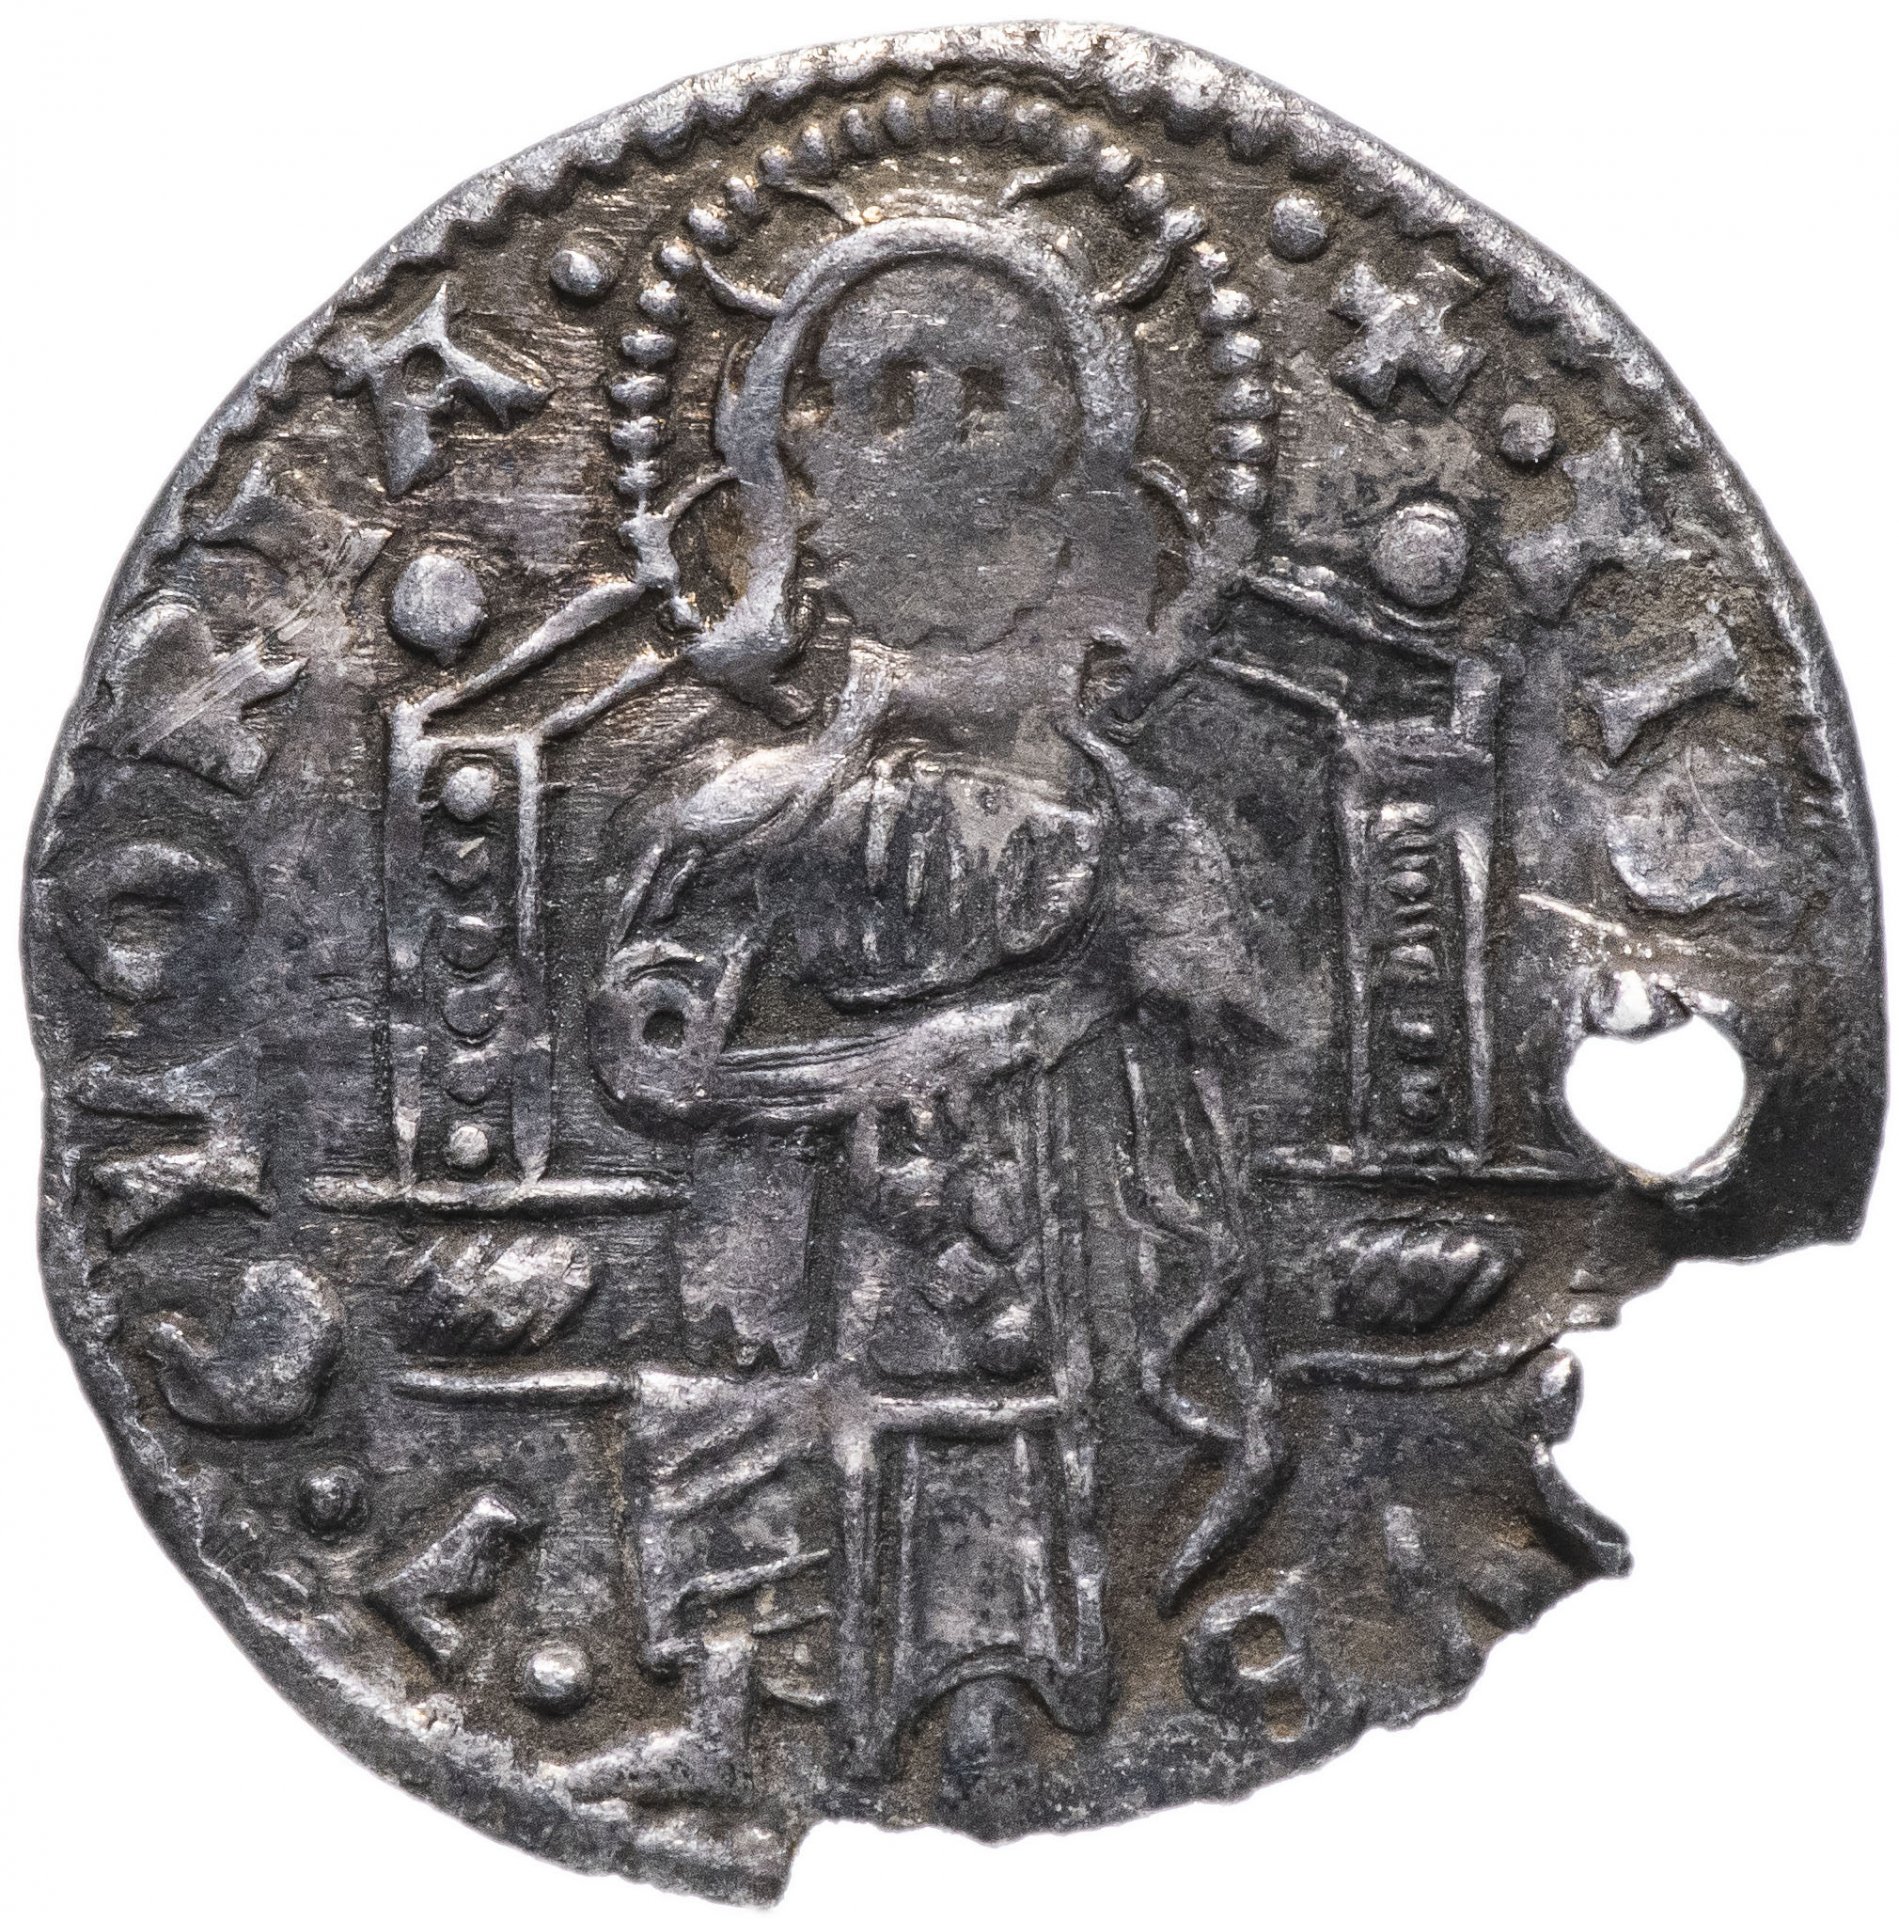 Монеты венецианской Республики. Гроссо монета. Монеты 1400 года. Монеты Венеции 15 века.